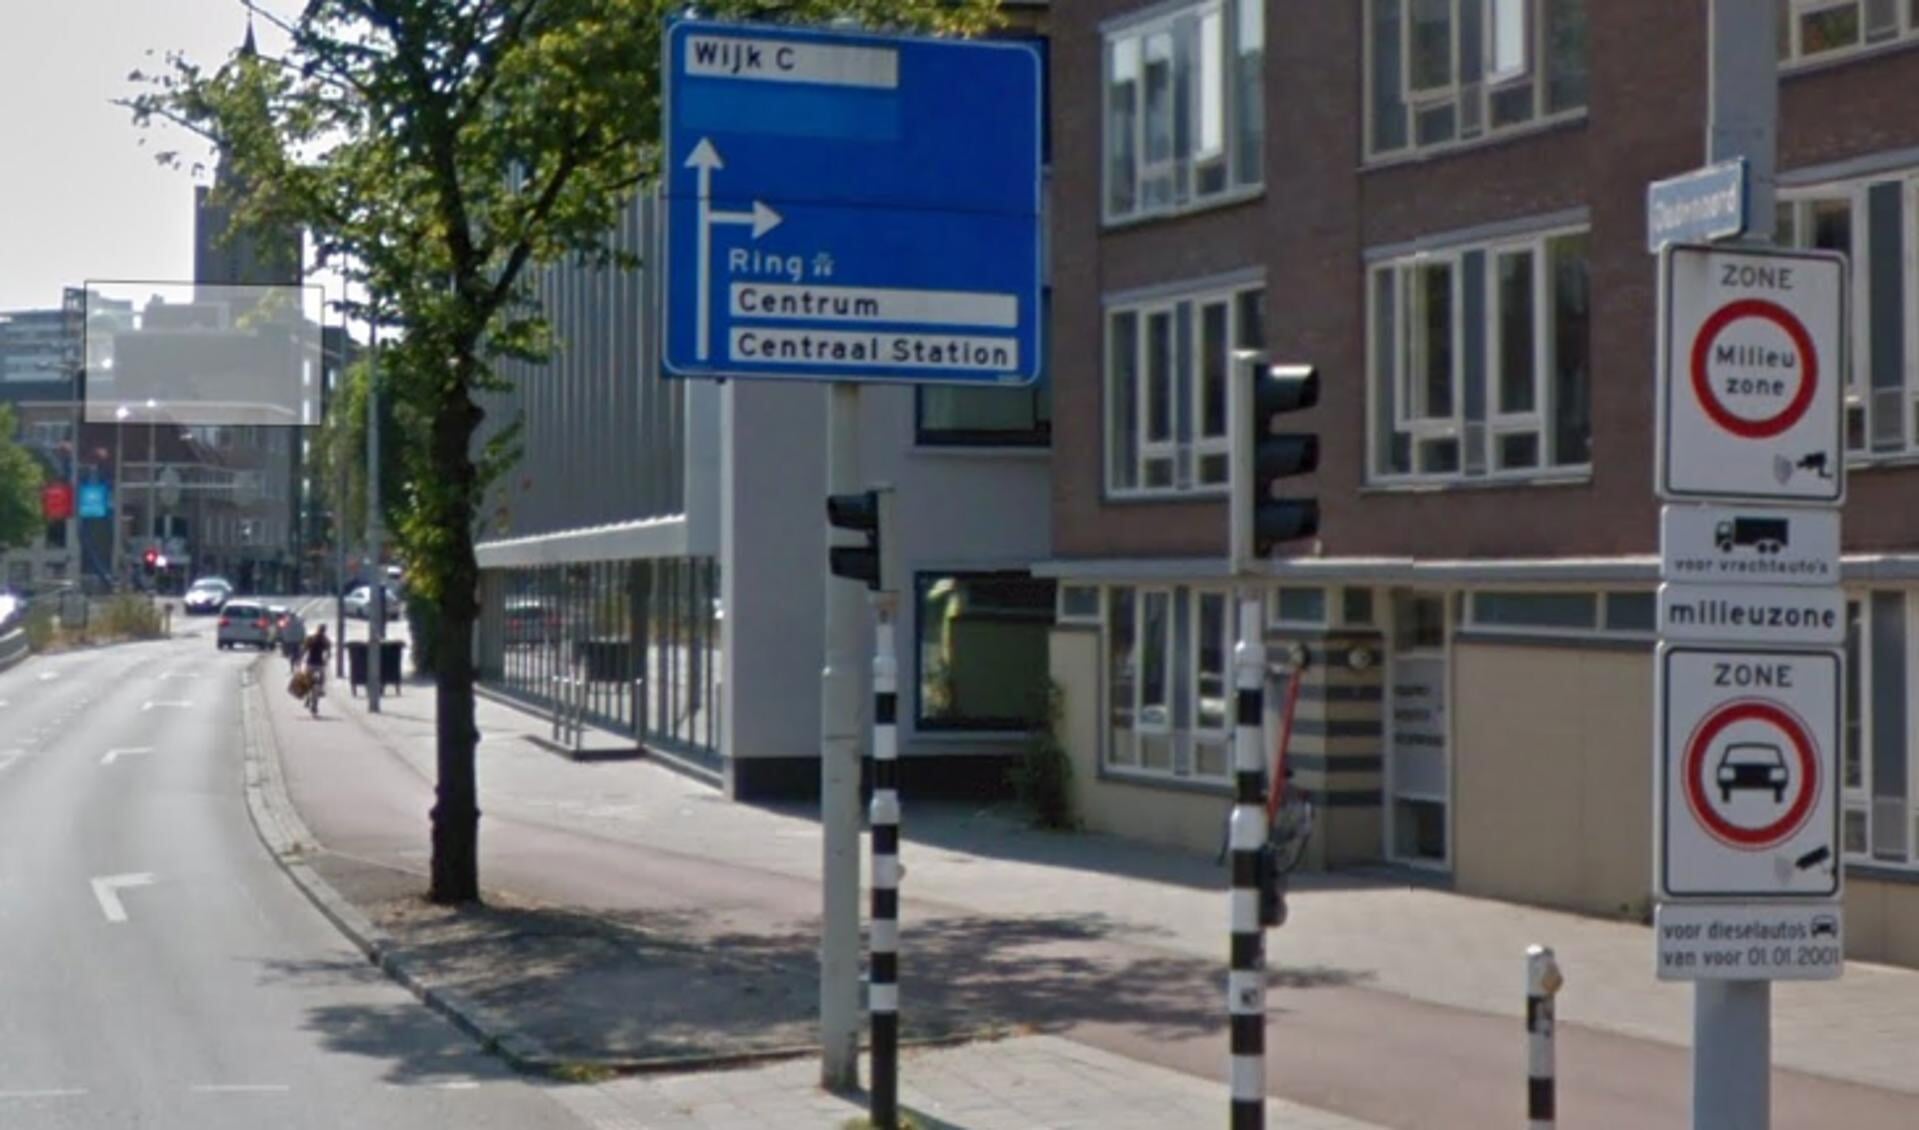 De gemeente Utrecht heeft vanaf 1 januari 2015 al een milieuzone, voor personenauto’s en bestelbusjes.